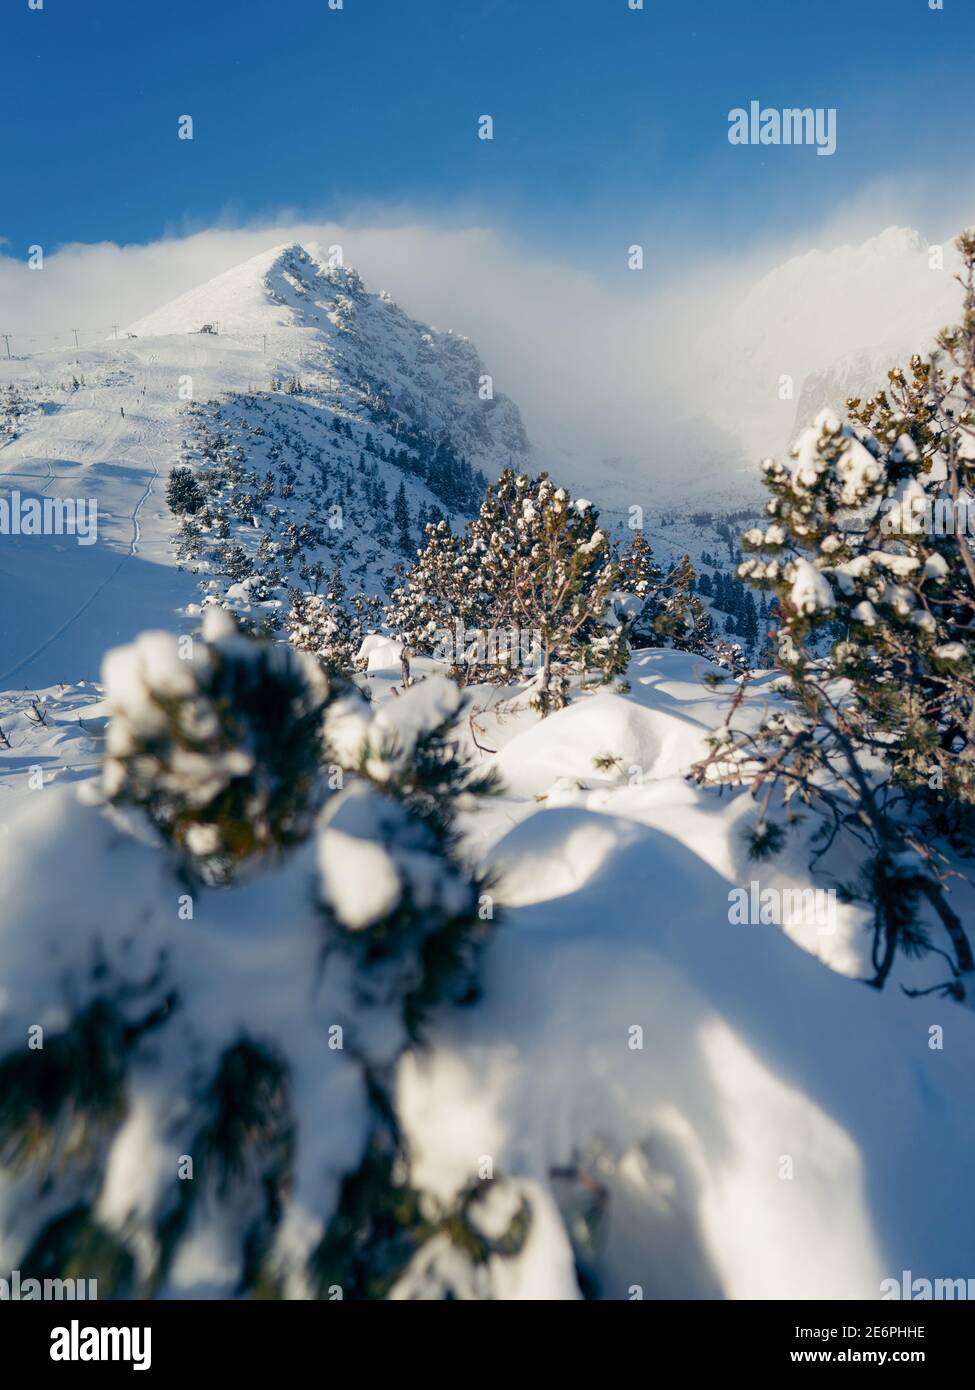 Le pic enneigé de Solisko lors d'une journée claire et ensoleillée dans les Hautes Tatras, Slovaquie, Europe, Hautes Tatras, Slovaquie. Neige, jour d'hiver Banque D'Images